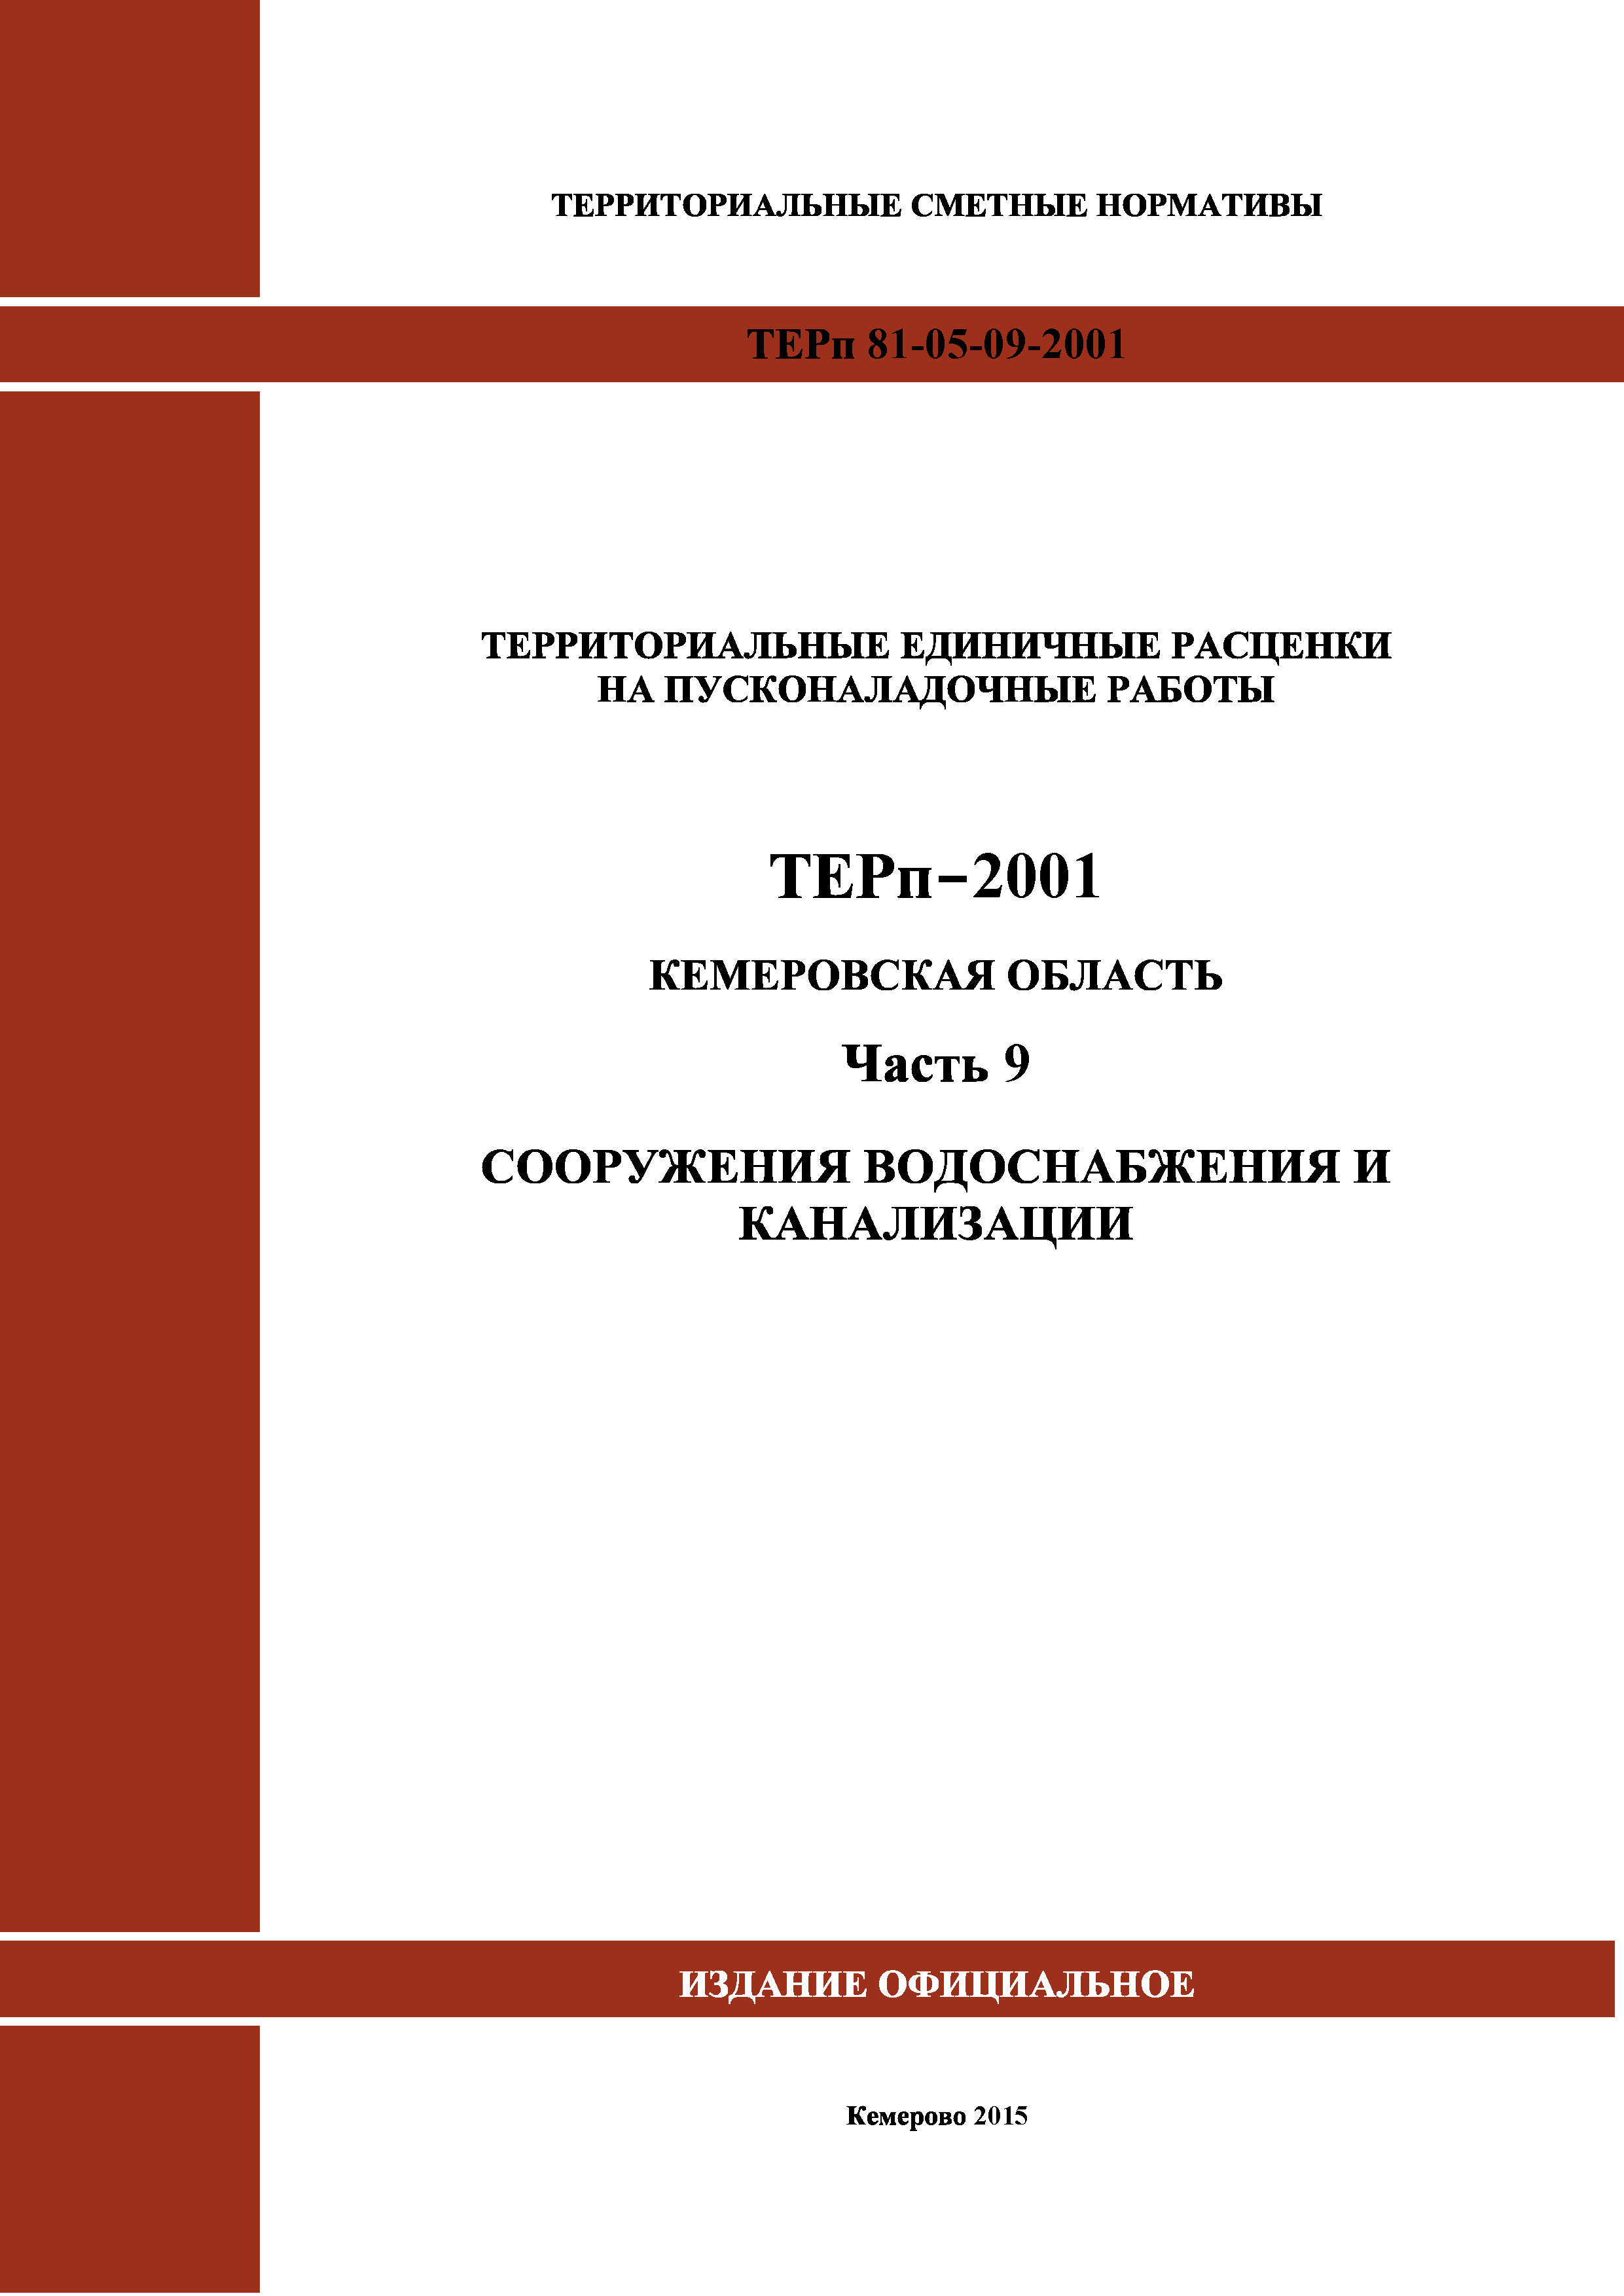 ТЕРп Кемеровская область 81-05-09-2001